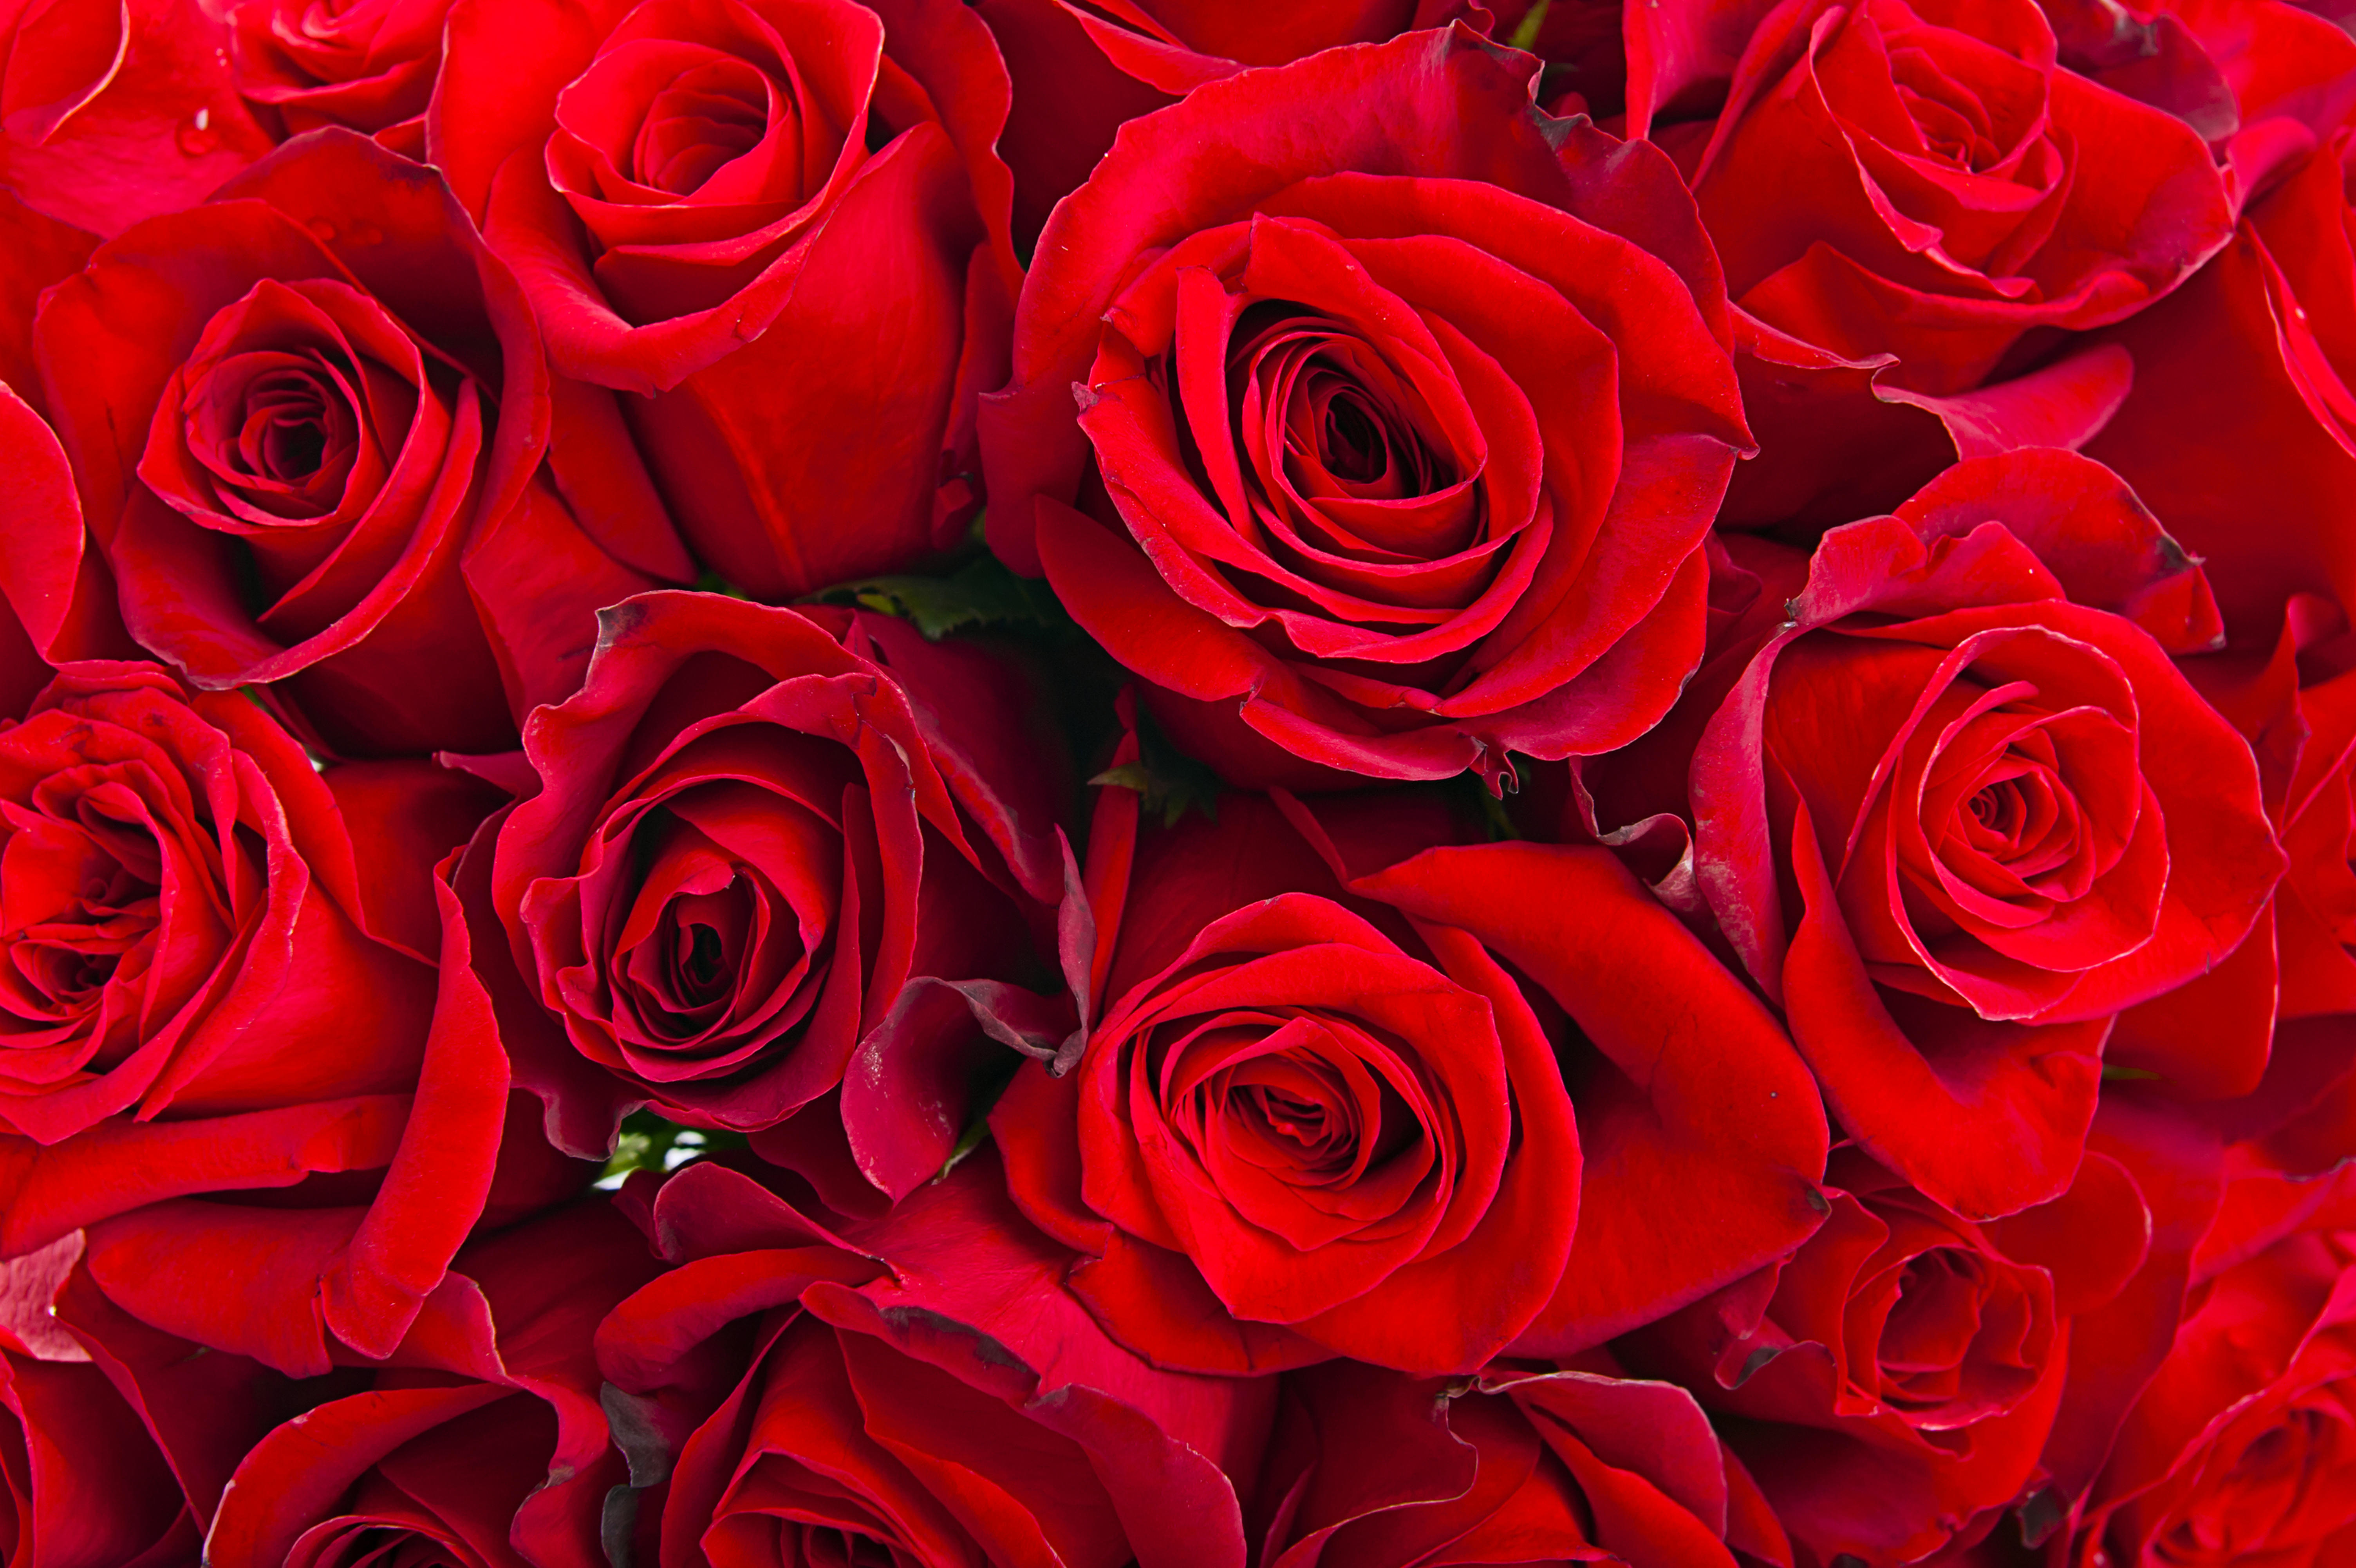 Бесплатное фото Скачать картинку роза, розы для рабочего стола бесплатно